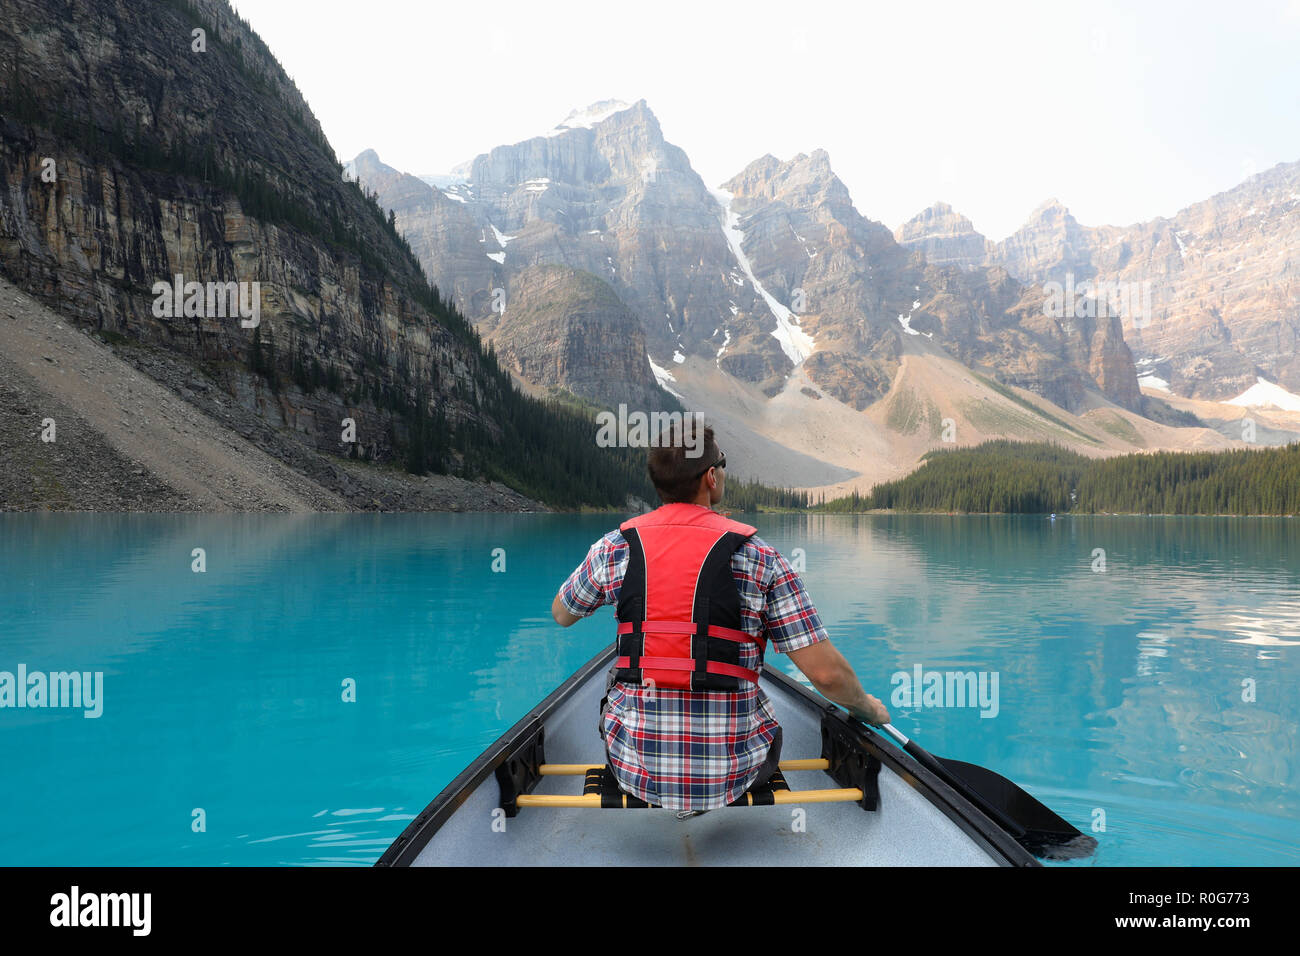 Maschio su una canoa con red giubbotto di salvataggio sul Lago Moraine con Montagne Rocciose nel Parco Nazionale di Banff, Canada Foto Stock